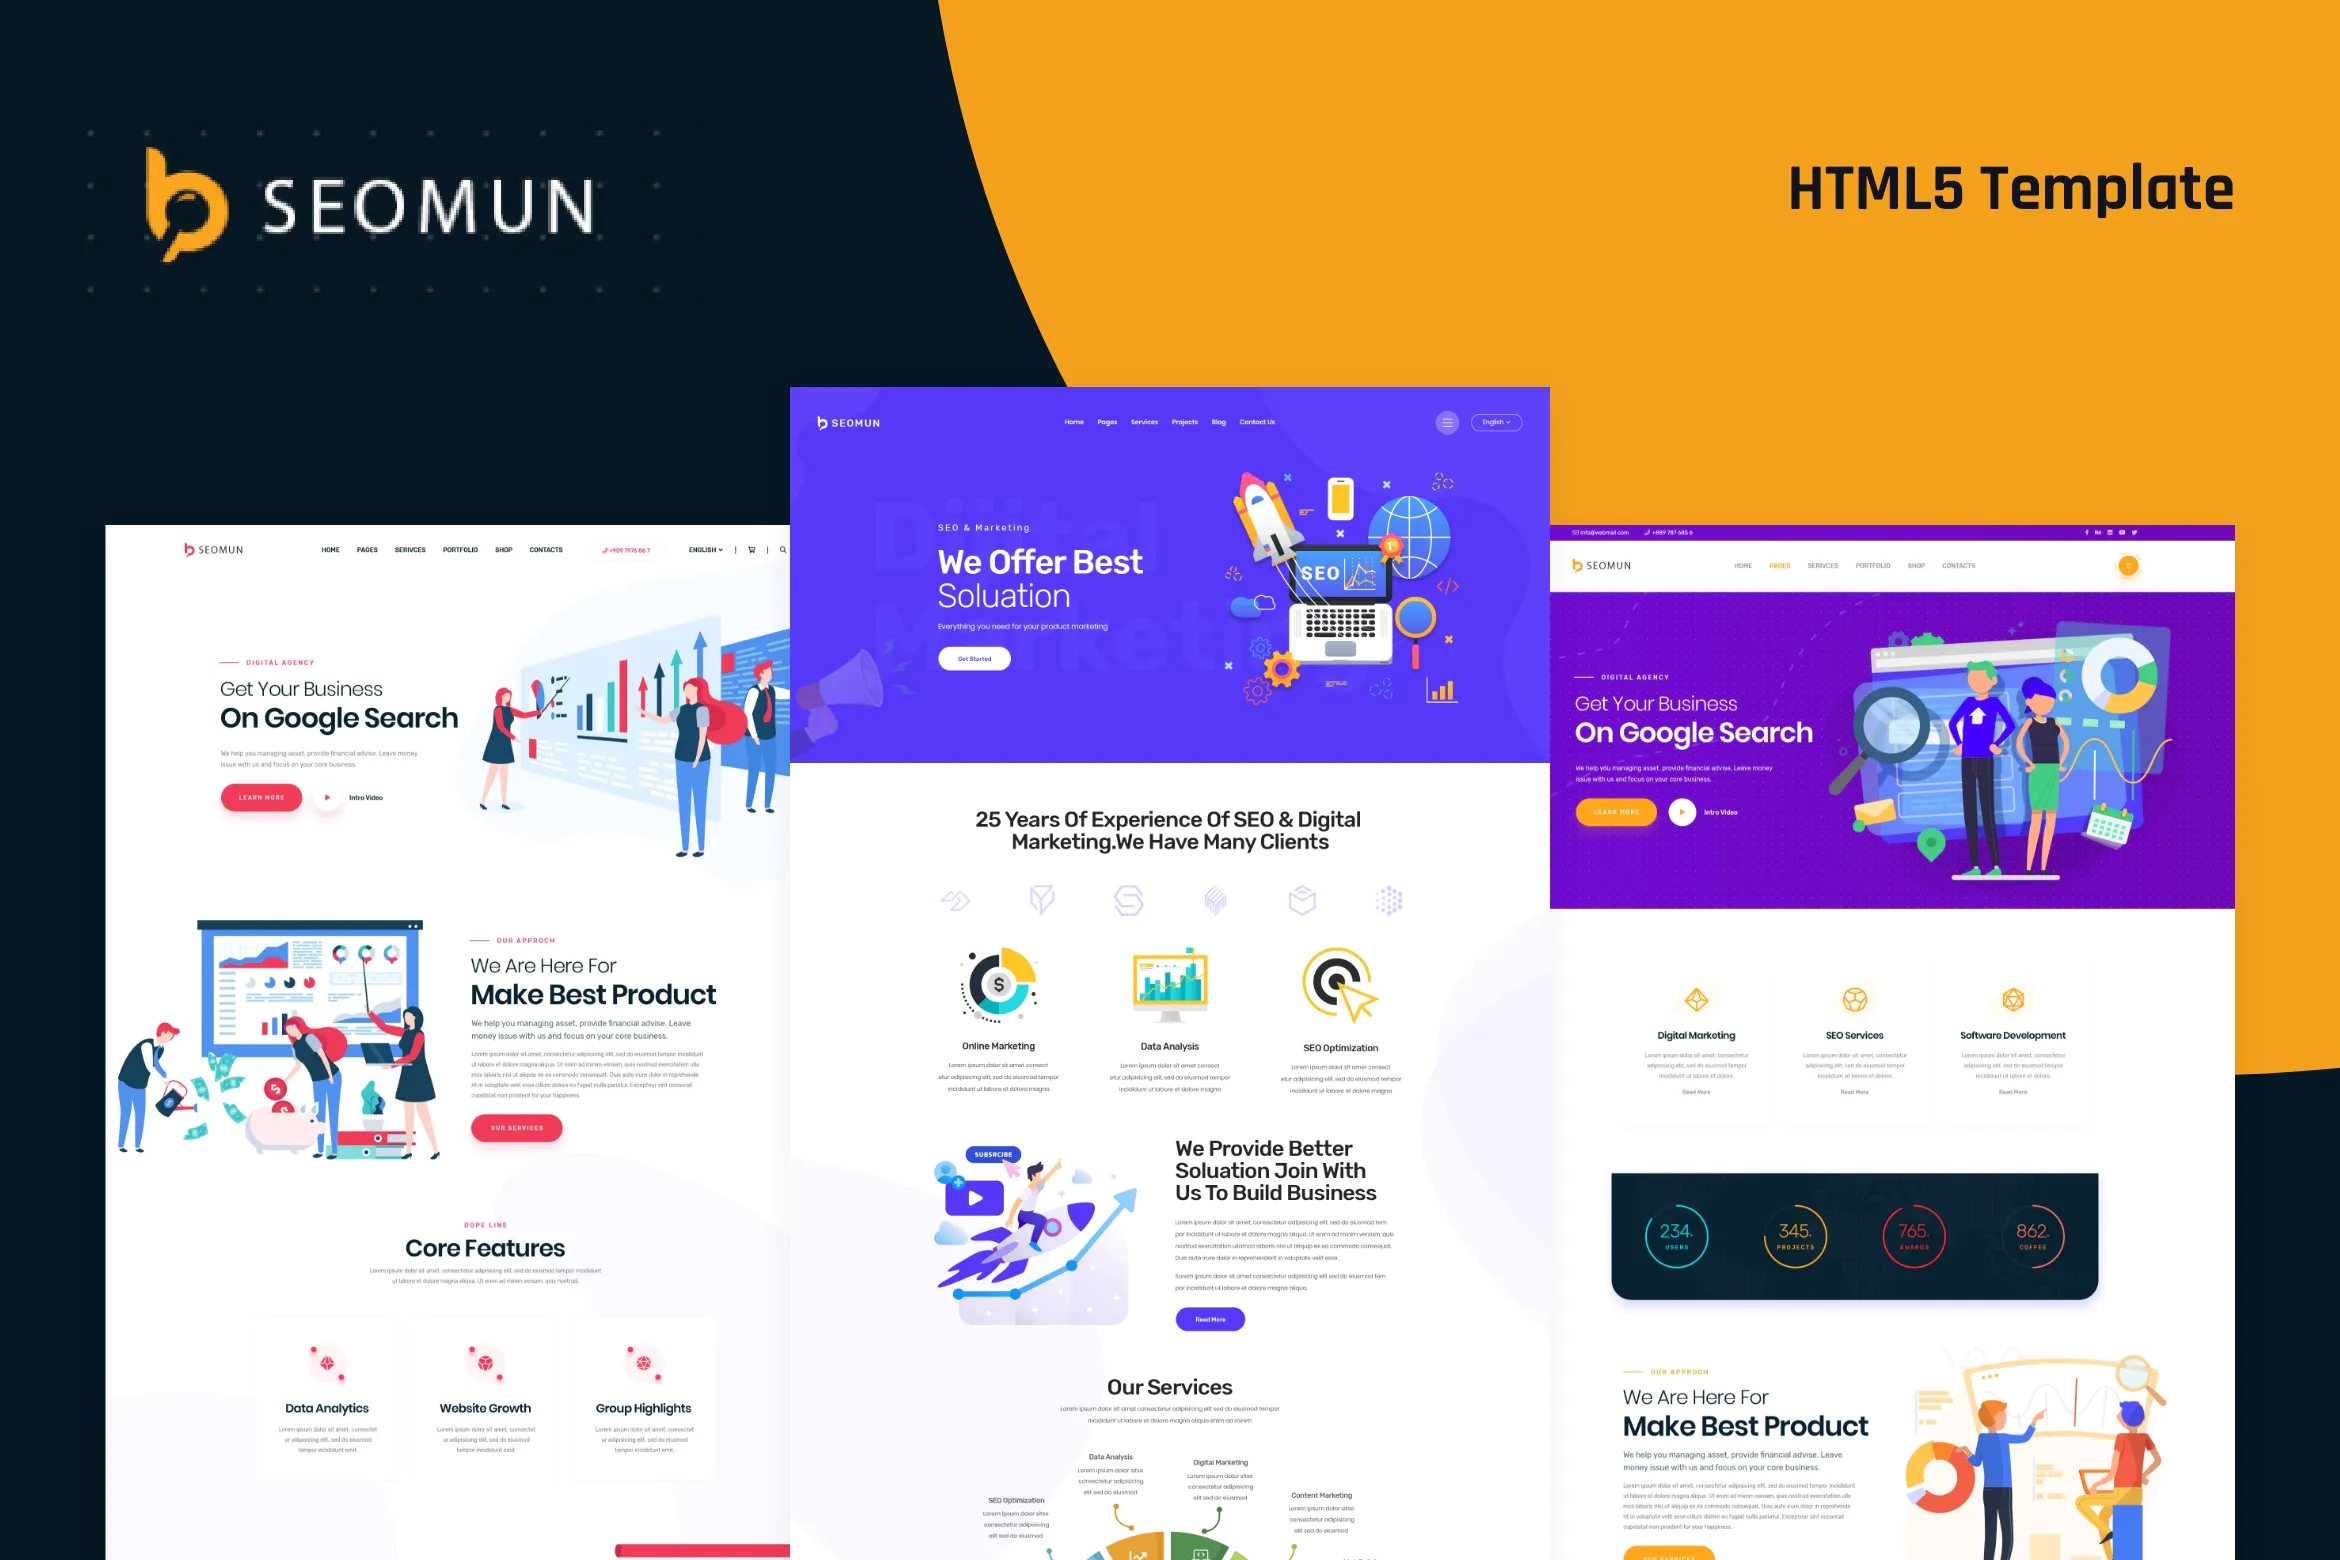 دانلود قالب سایت Seomun - قالب شرکتی و دیجیتال مارکتینگ HTML5